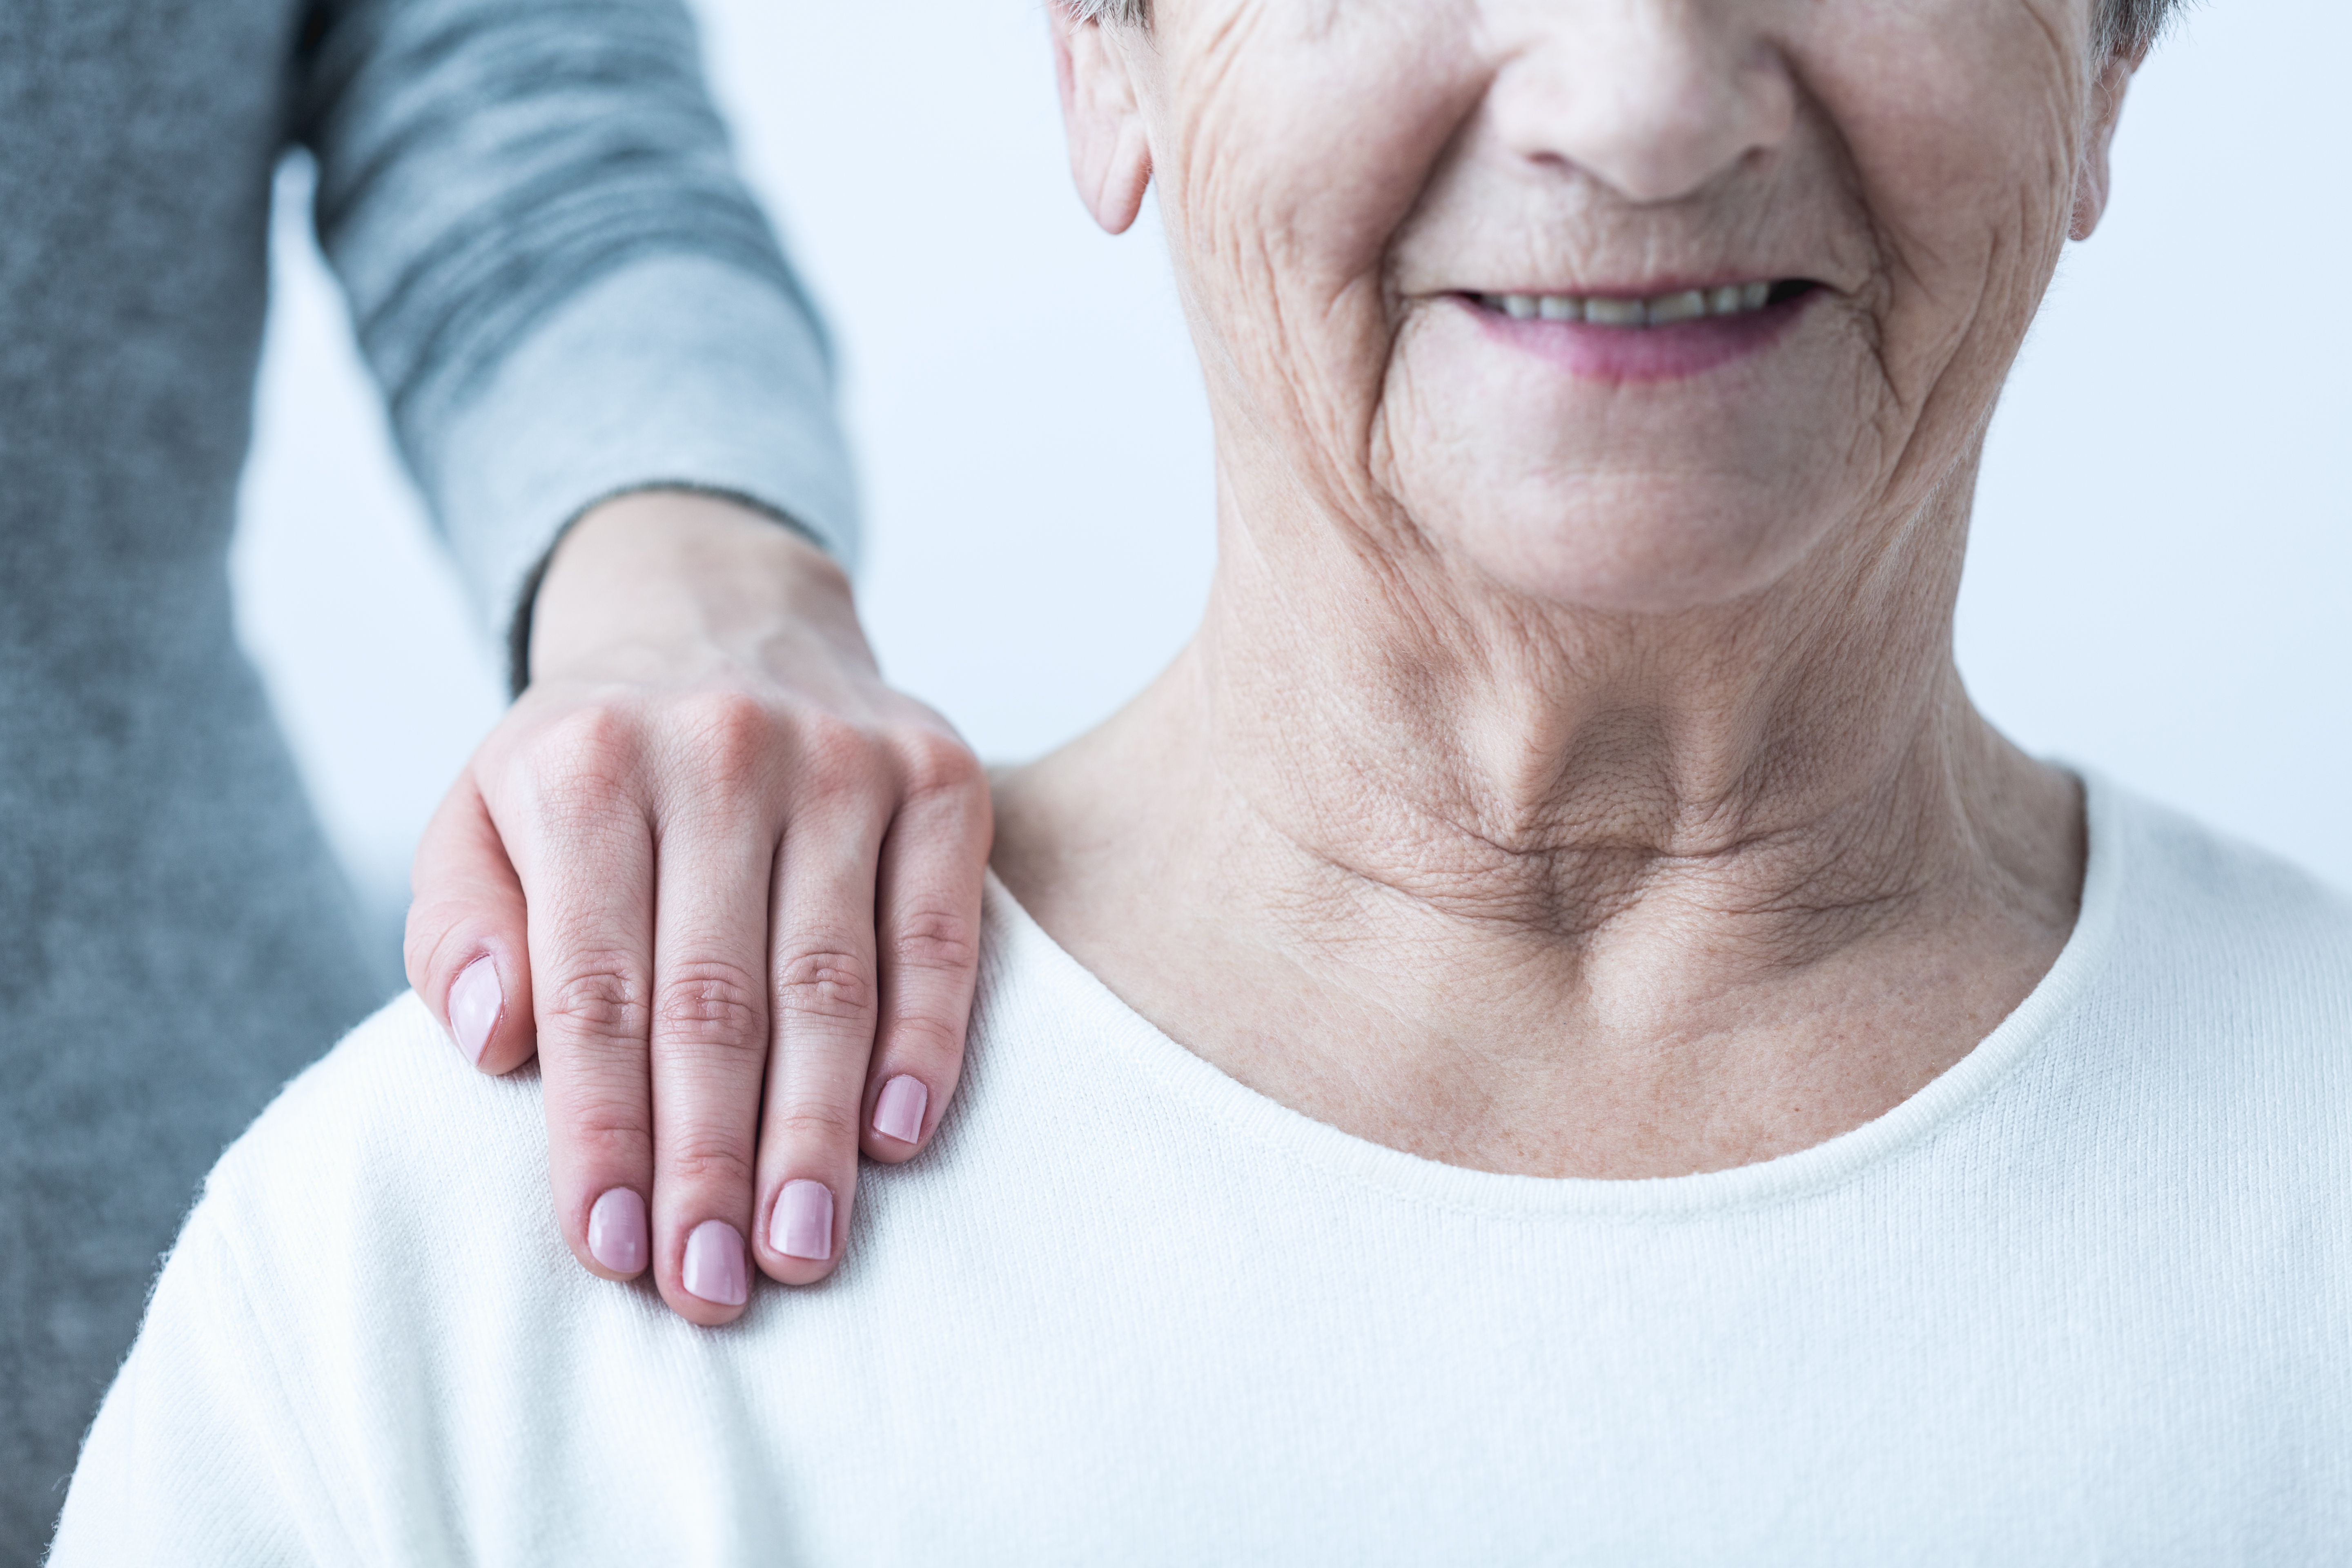 A importância dos cuidados paliativos para pacientes com Alzheimer